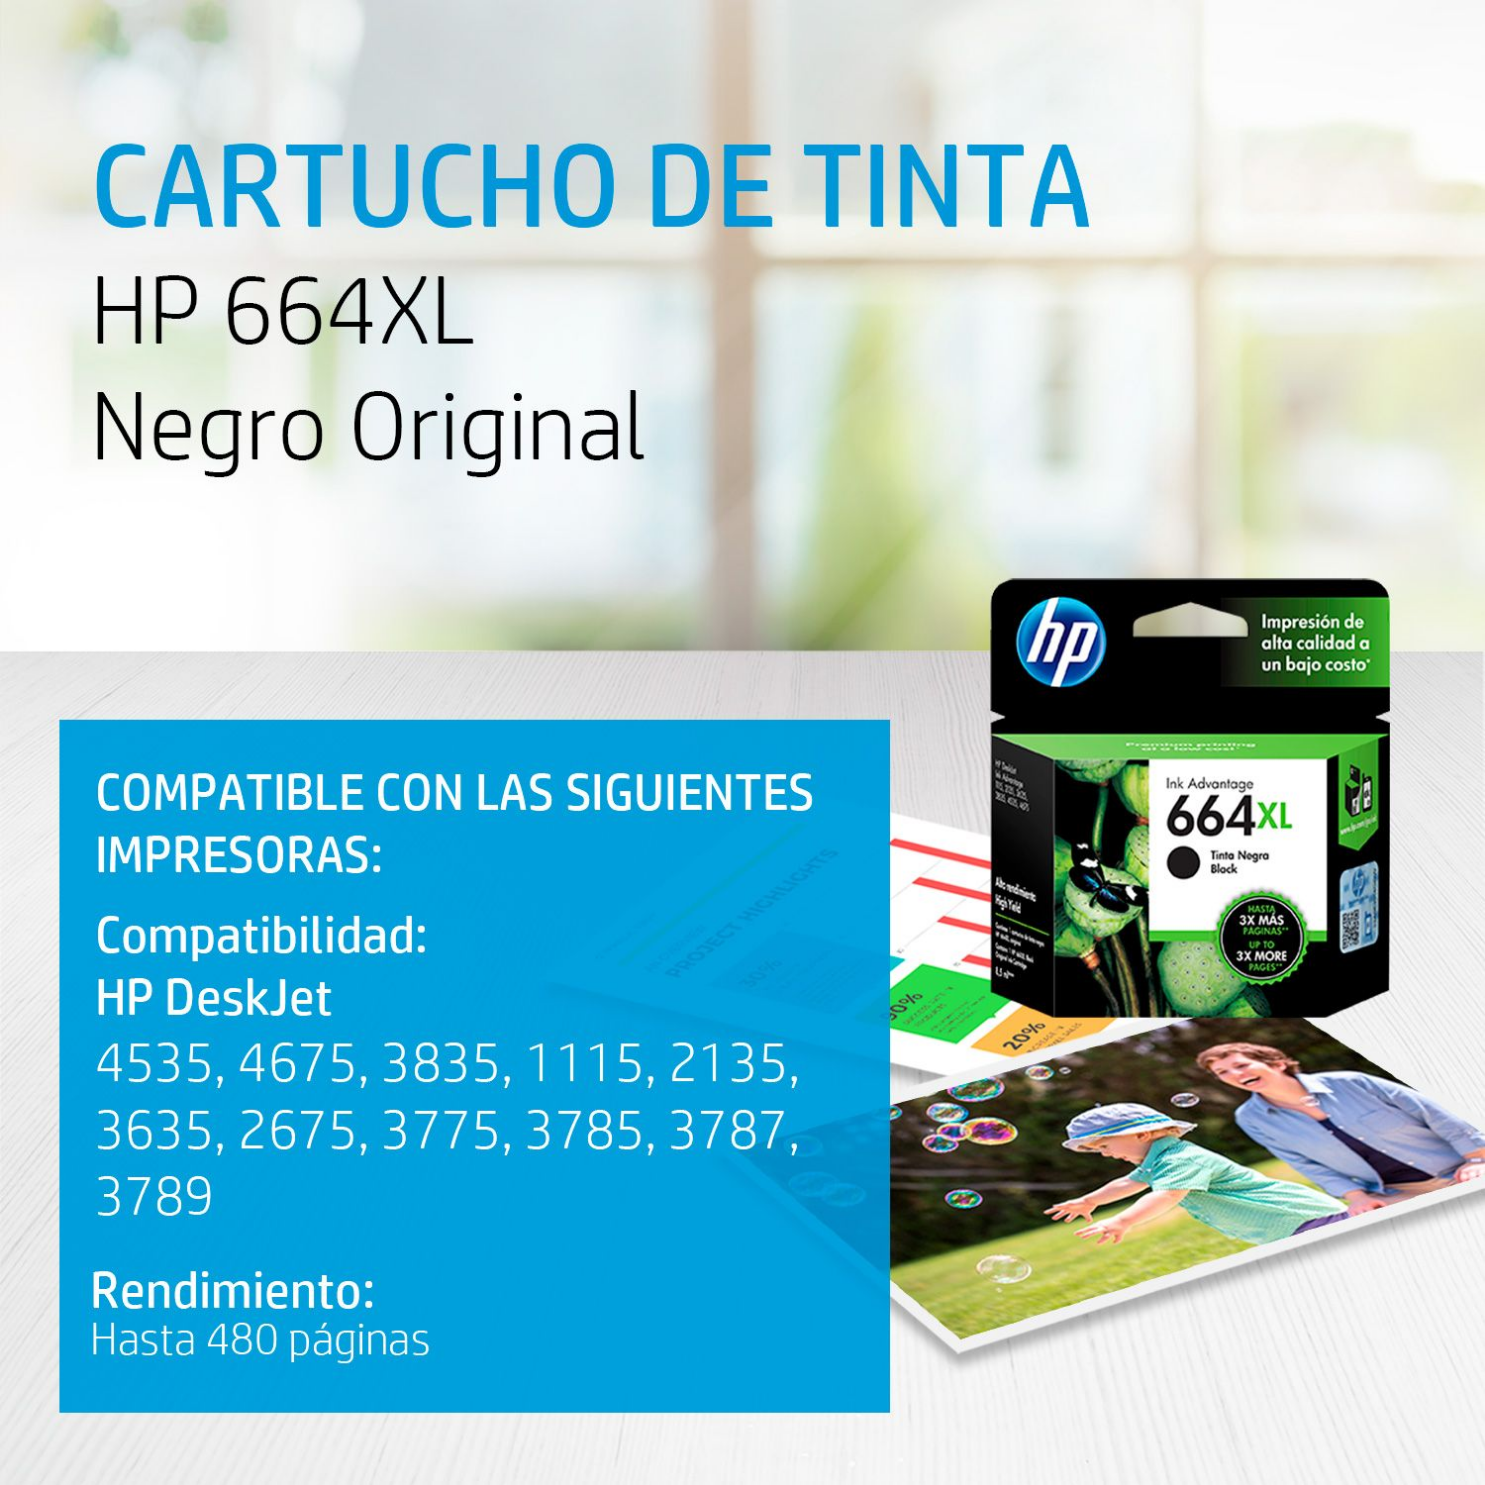 Cartucho de tinta HP 664XL Negro (F6V31AL) DeskJet 1115, 2135, 4535, 4675, 480 Pag.